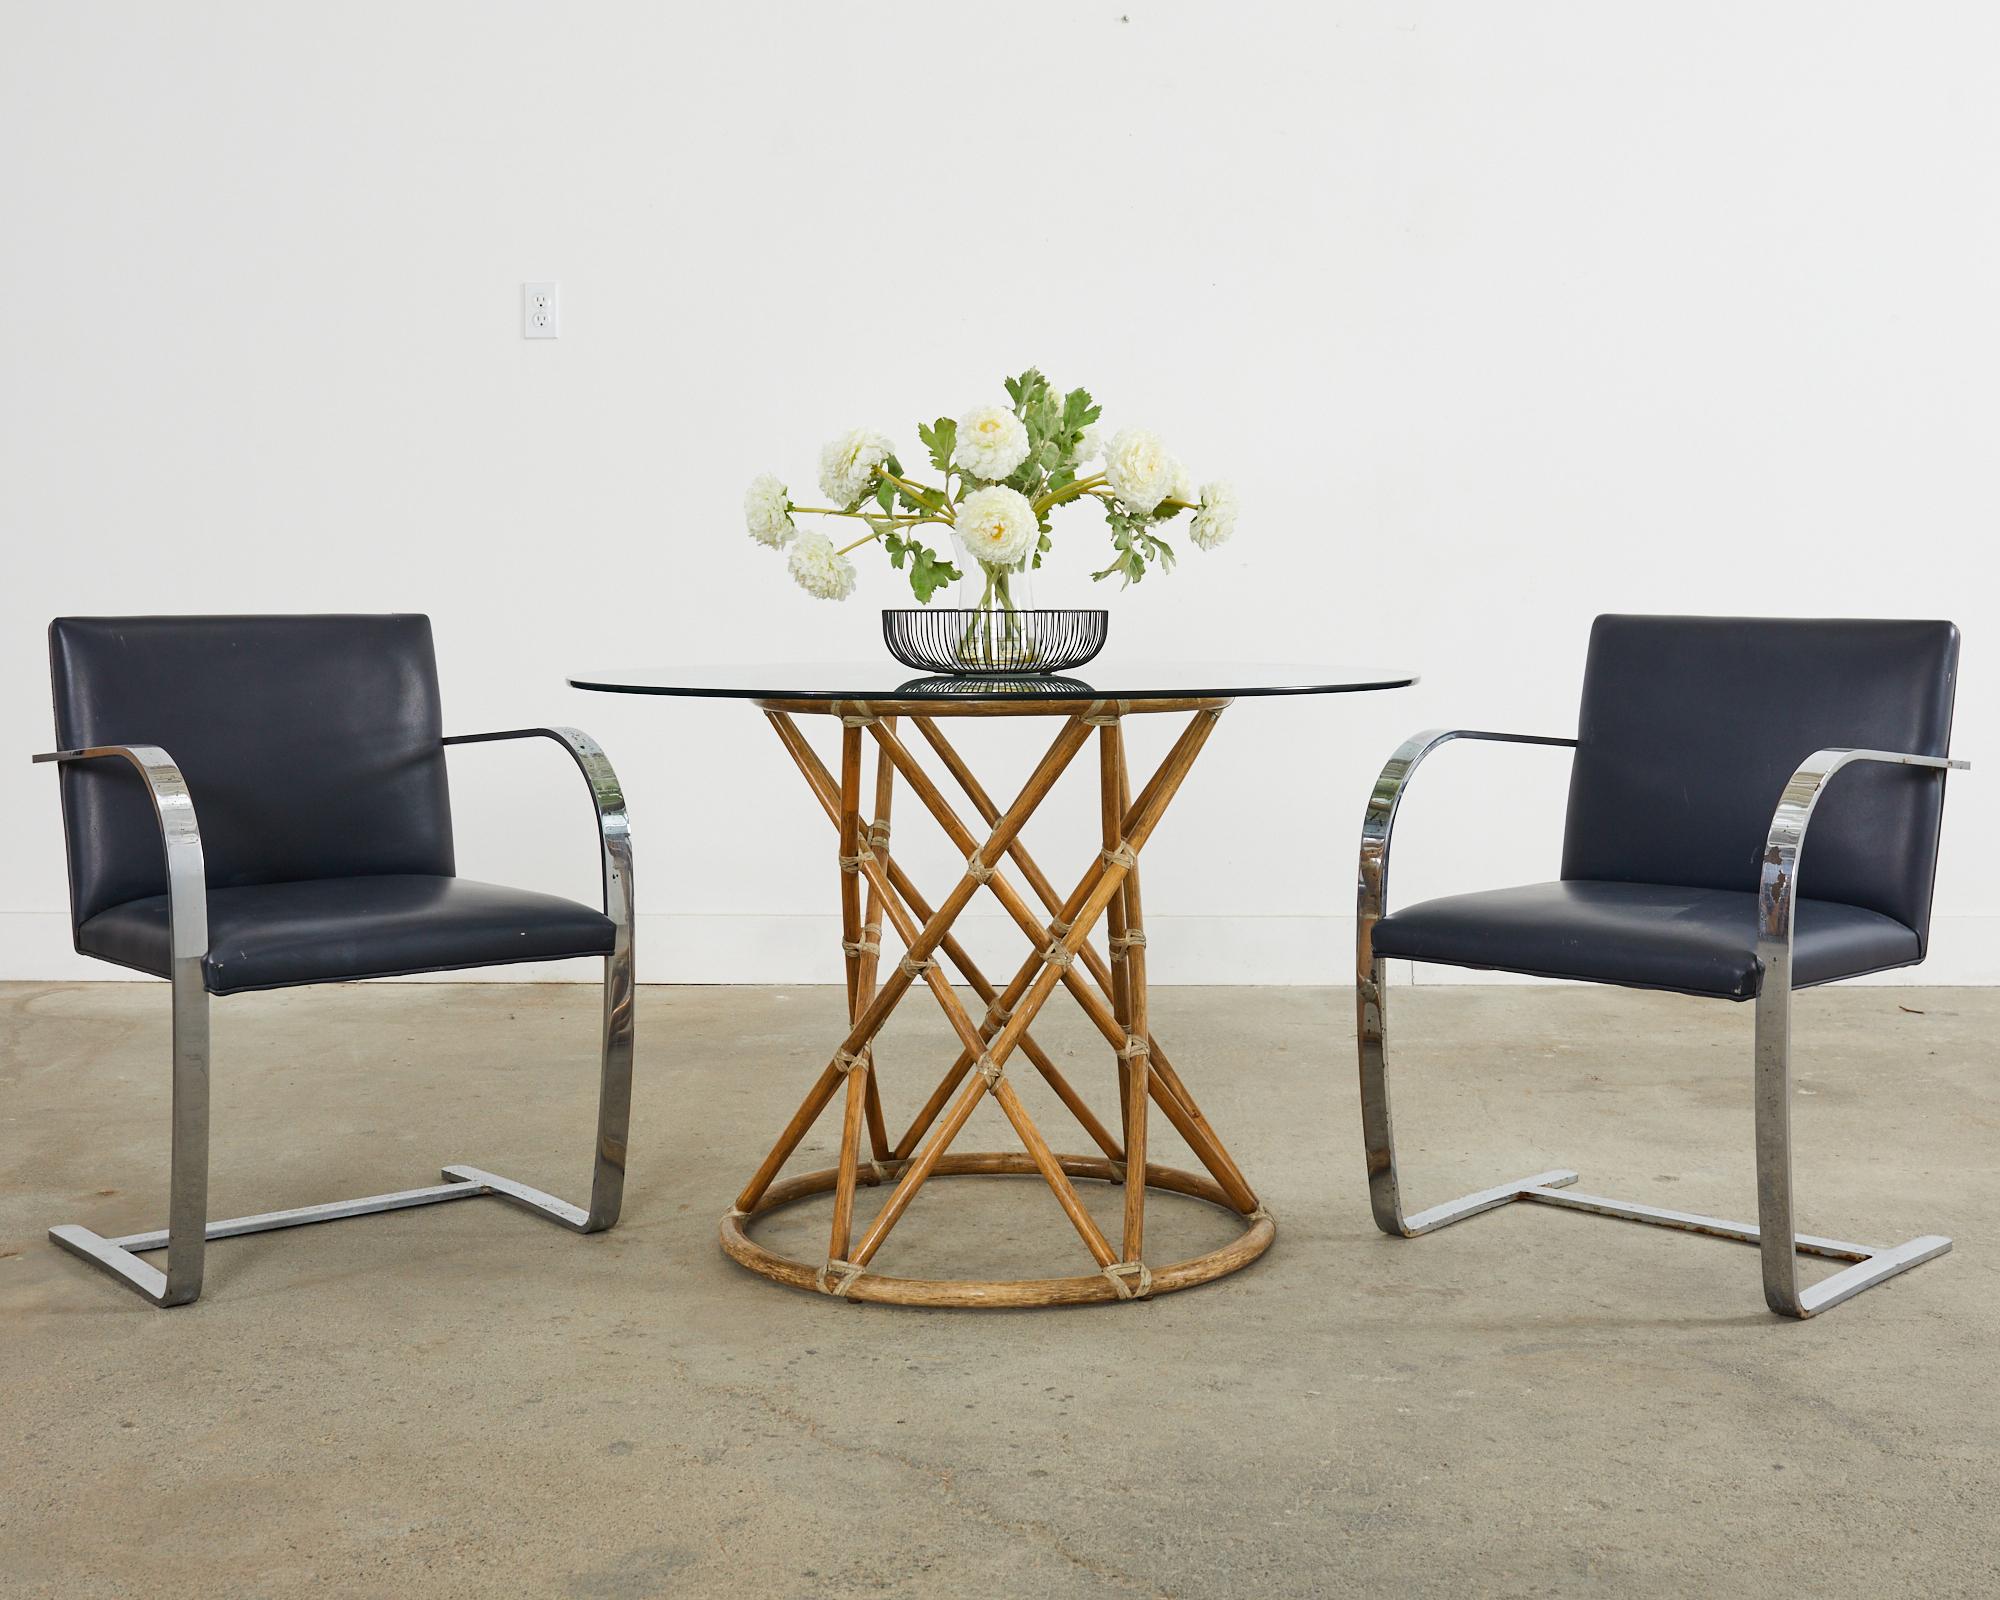 Paire de fauteuils Mies van der Rohe pour Knoll brno. Les chaises présentent un design de barre plate en acier avec une finition chromée. Les cadres ont des housses de siège en cuir bleu marine. Etiquettes de commande Knoll sur le bas des sièges. La